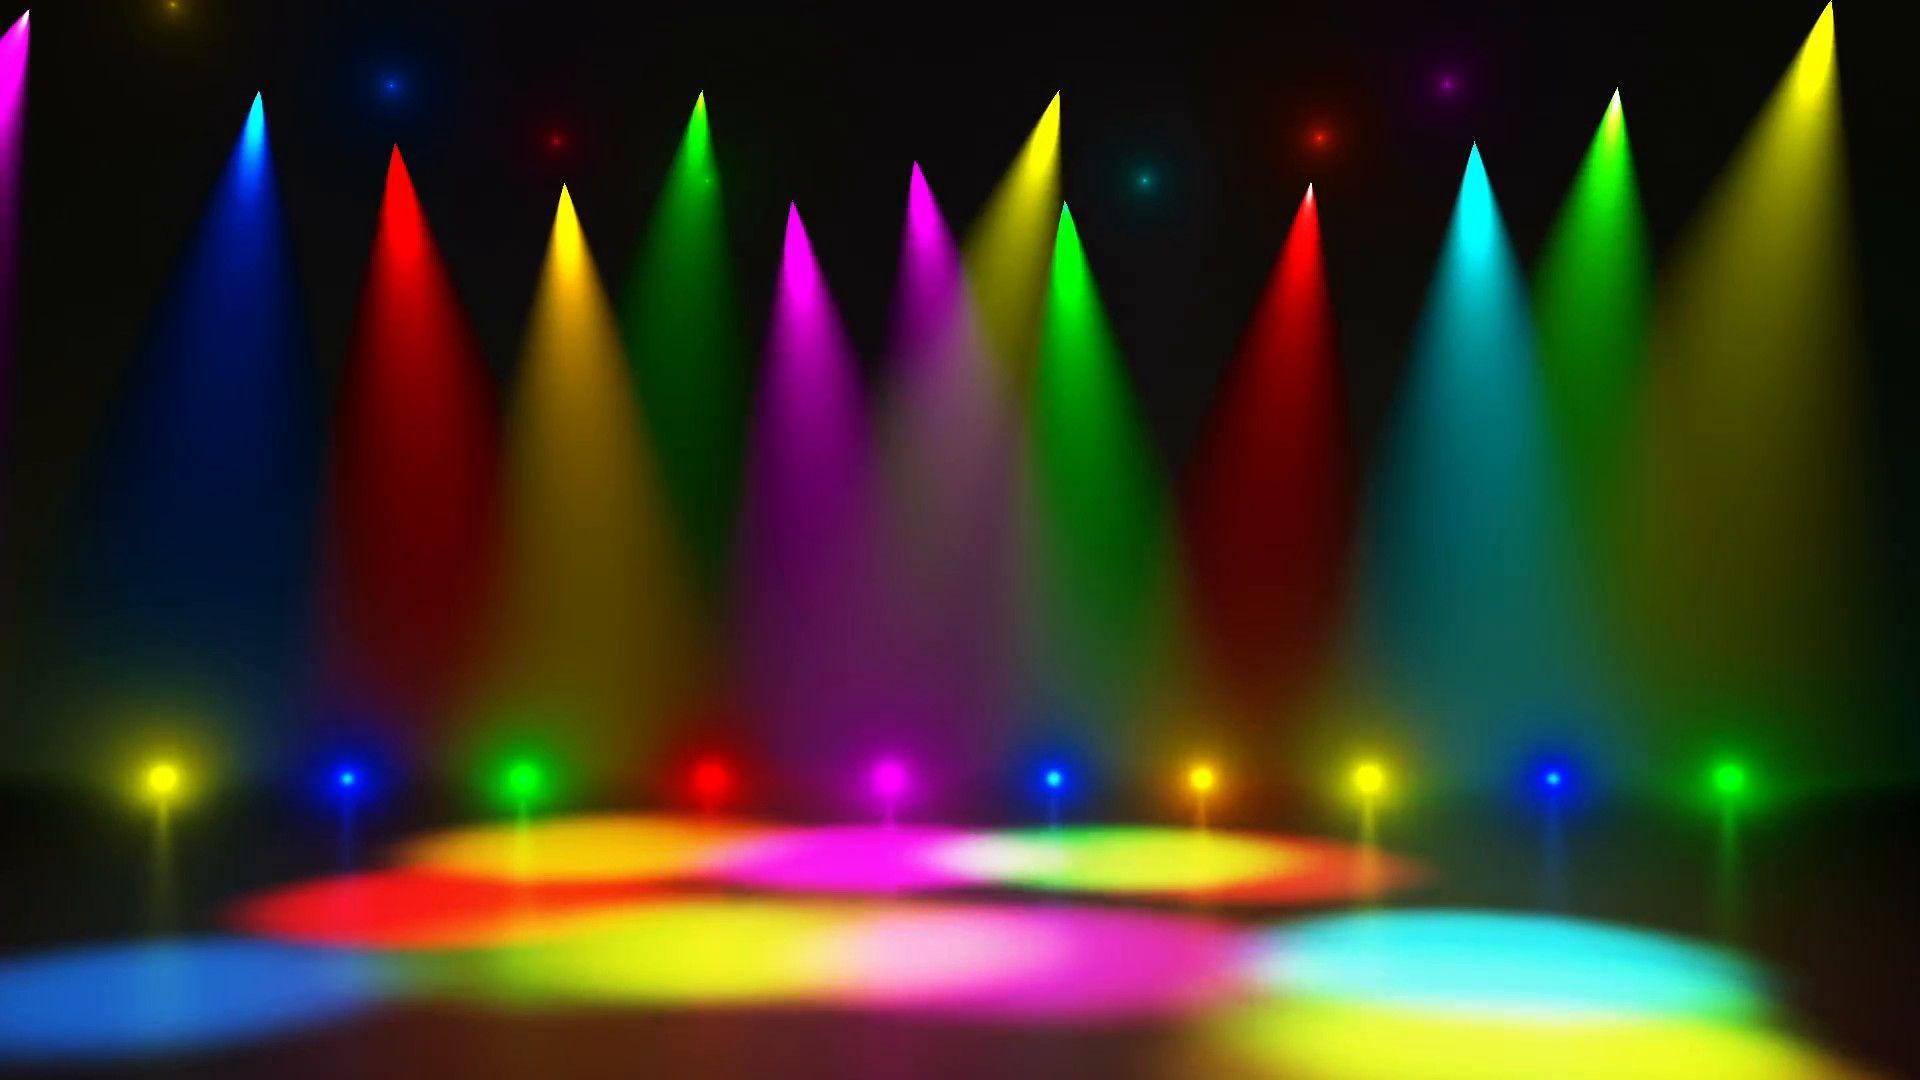 Dance Floor Wallpapers - Top Free Dance Floor Backgrounds - WallpaperAccess